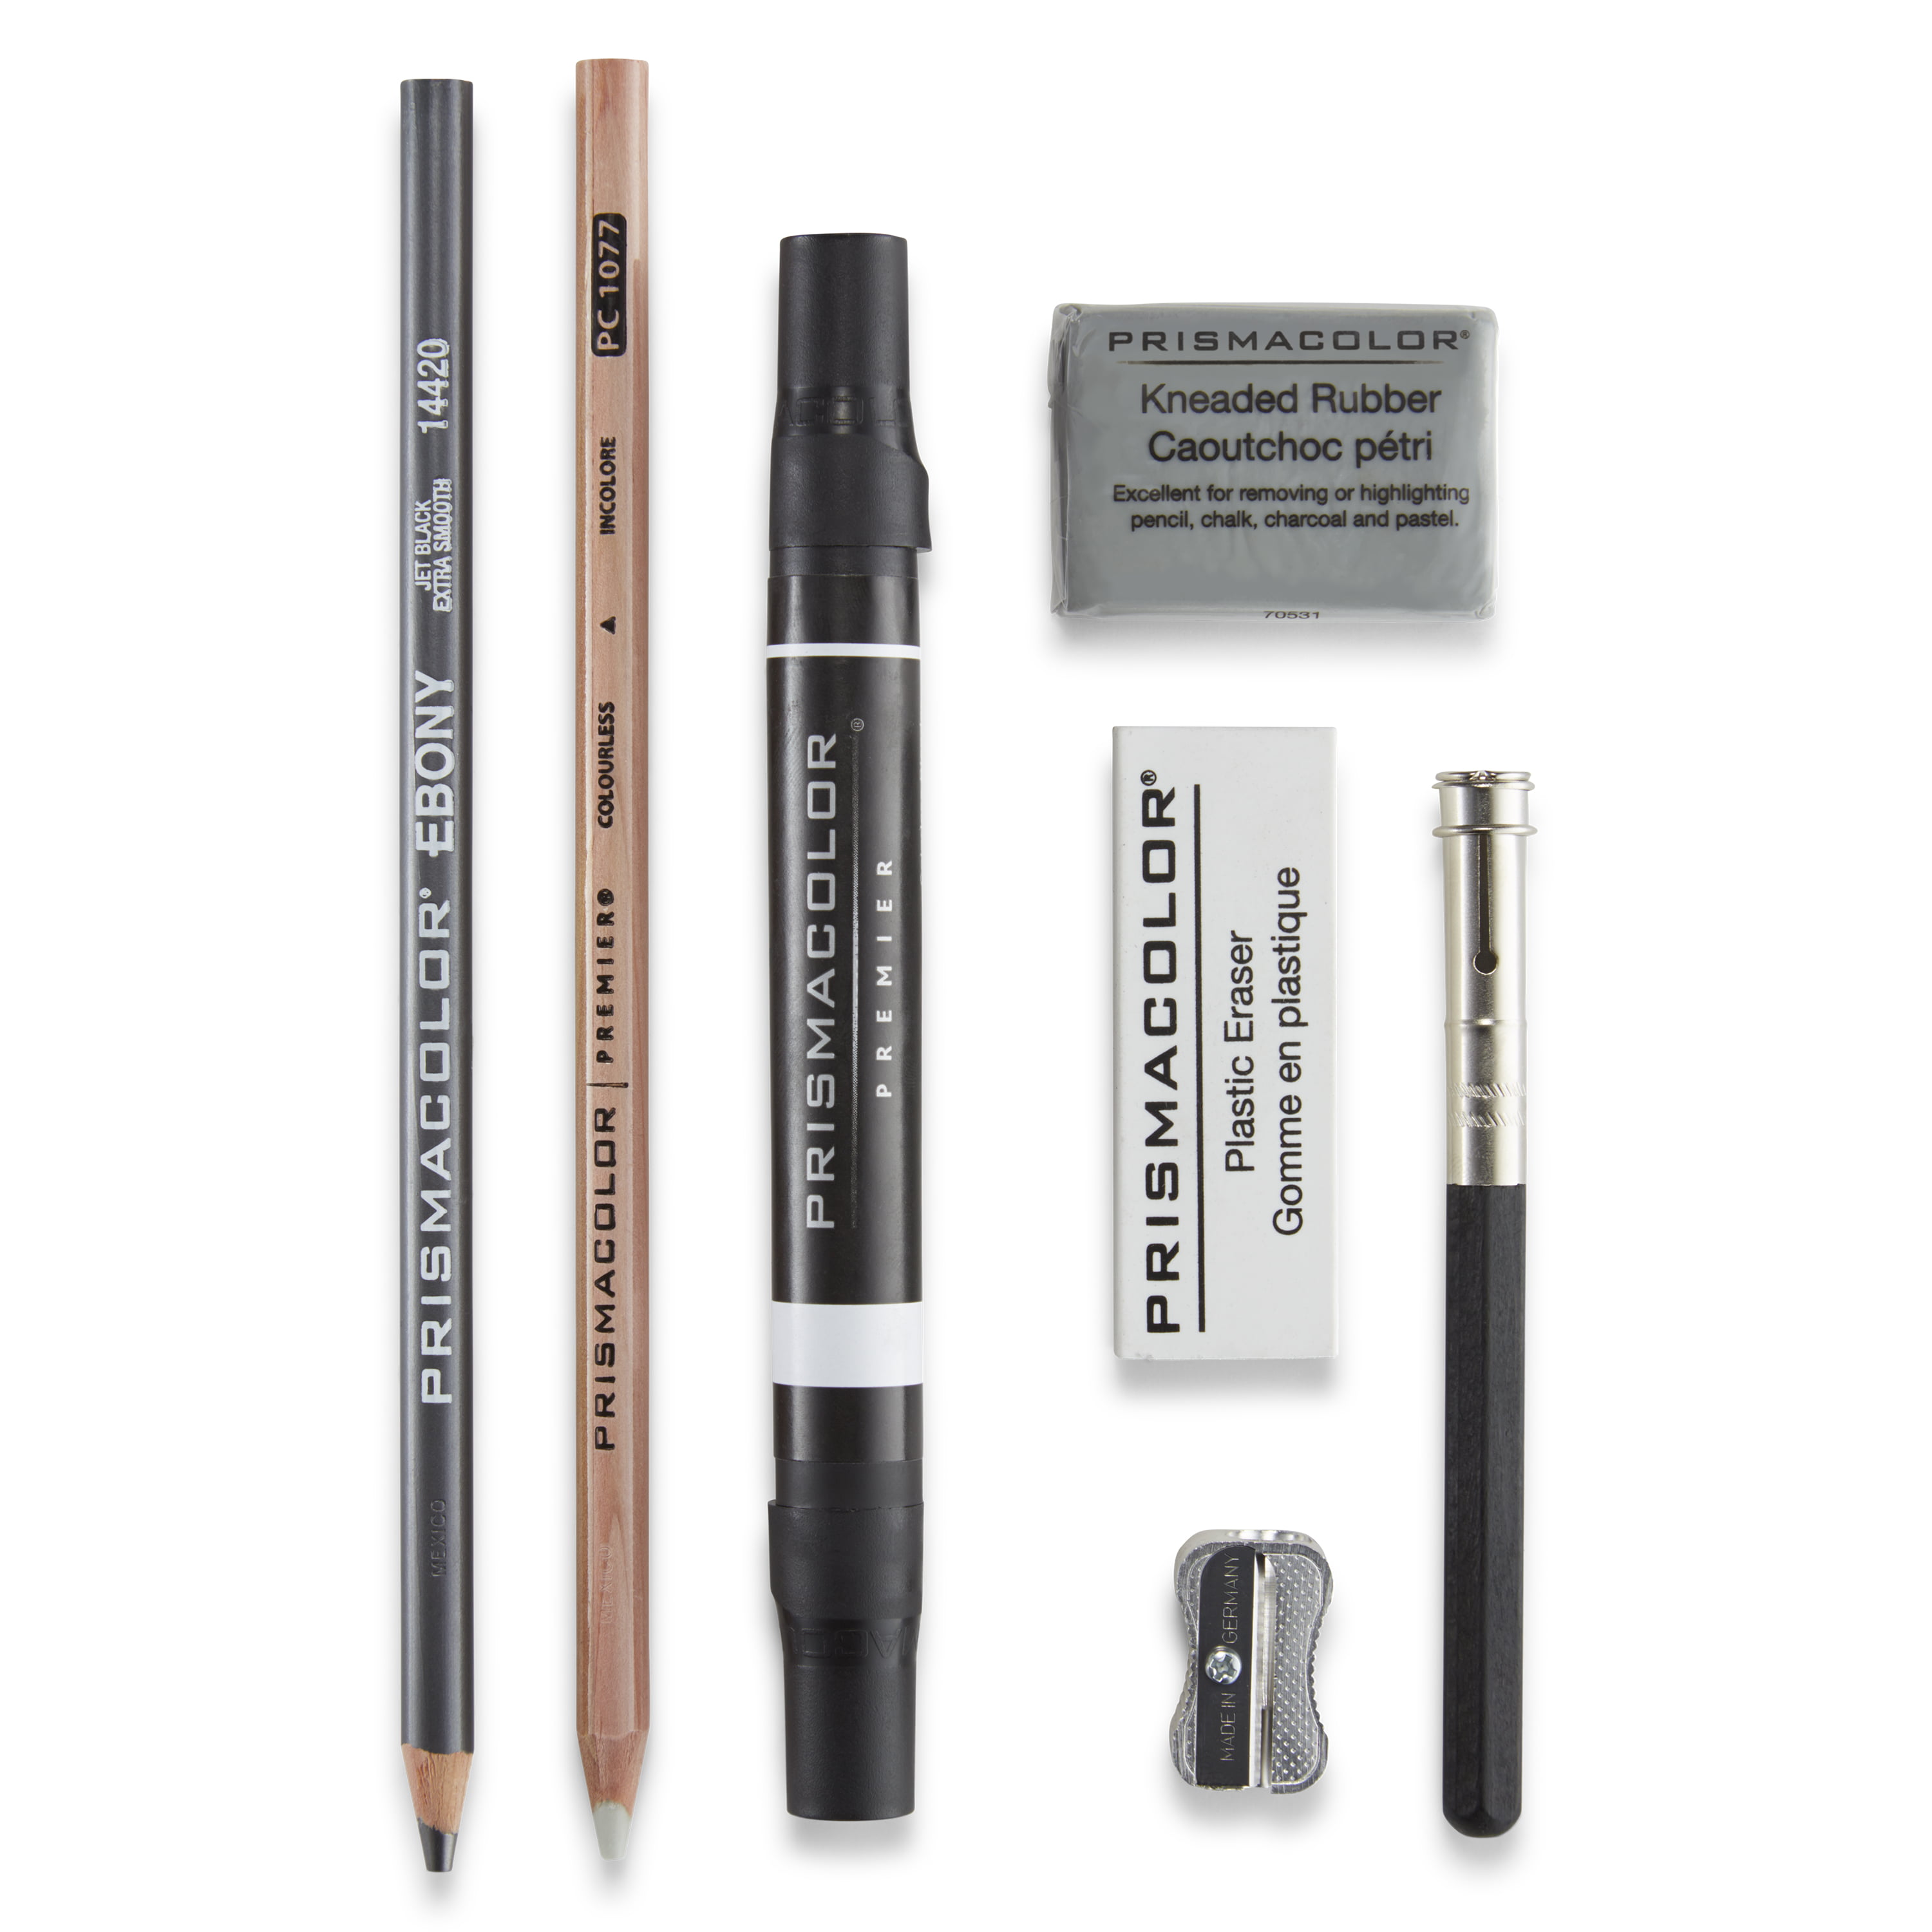 Bundle Prismacolor Blender Pencil Colorless, 2-Pack + Prismacolor 3 Eraser Set + Prismacolor Scholar Colored Pencil Sharpener